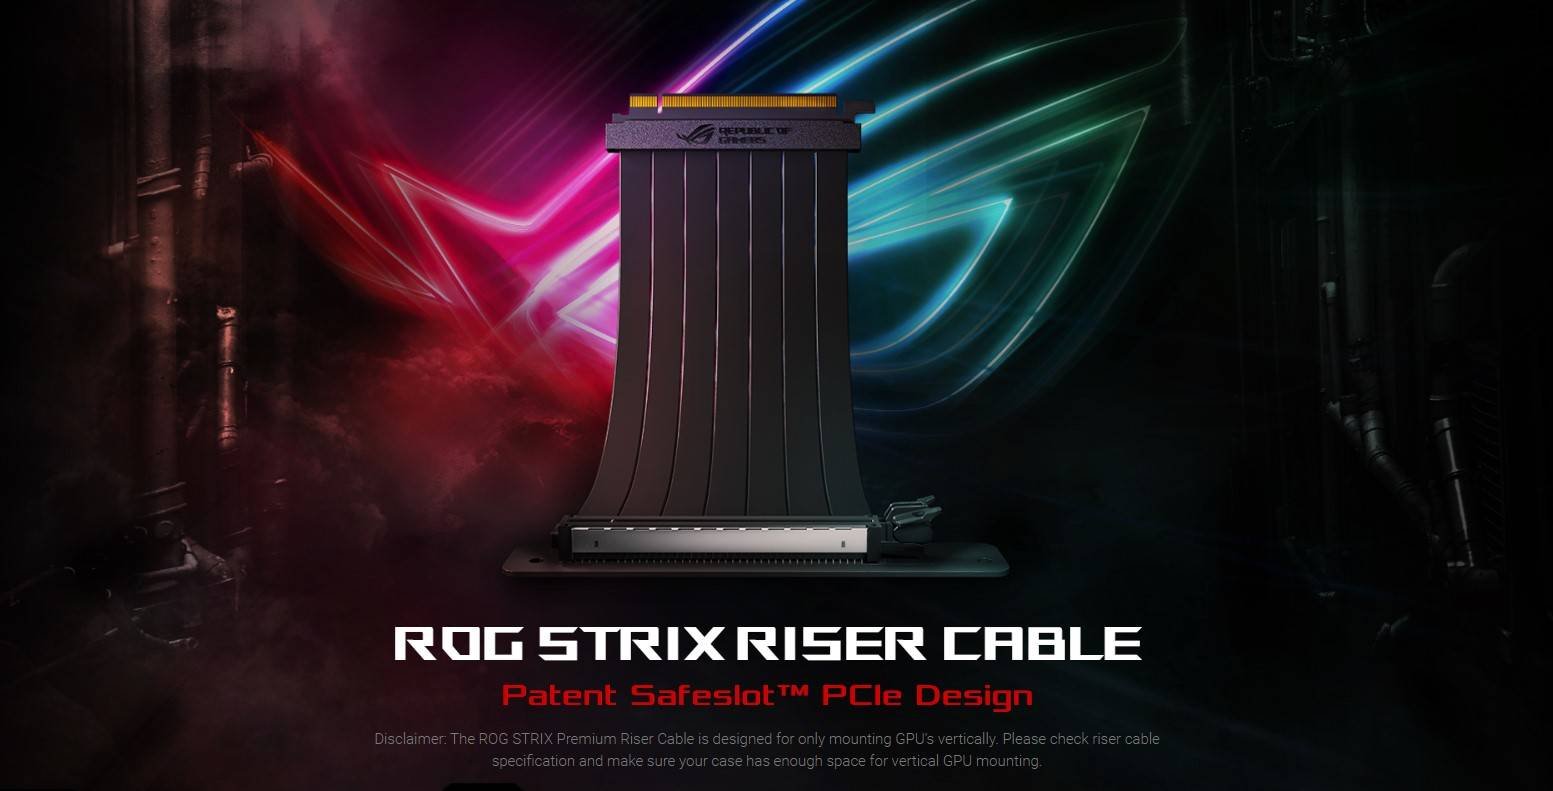 Immagine di Asus ROG Strix Riser Cable, per montare la scheda video in verticale senza problemi